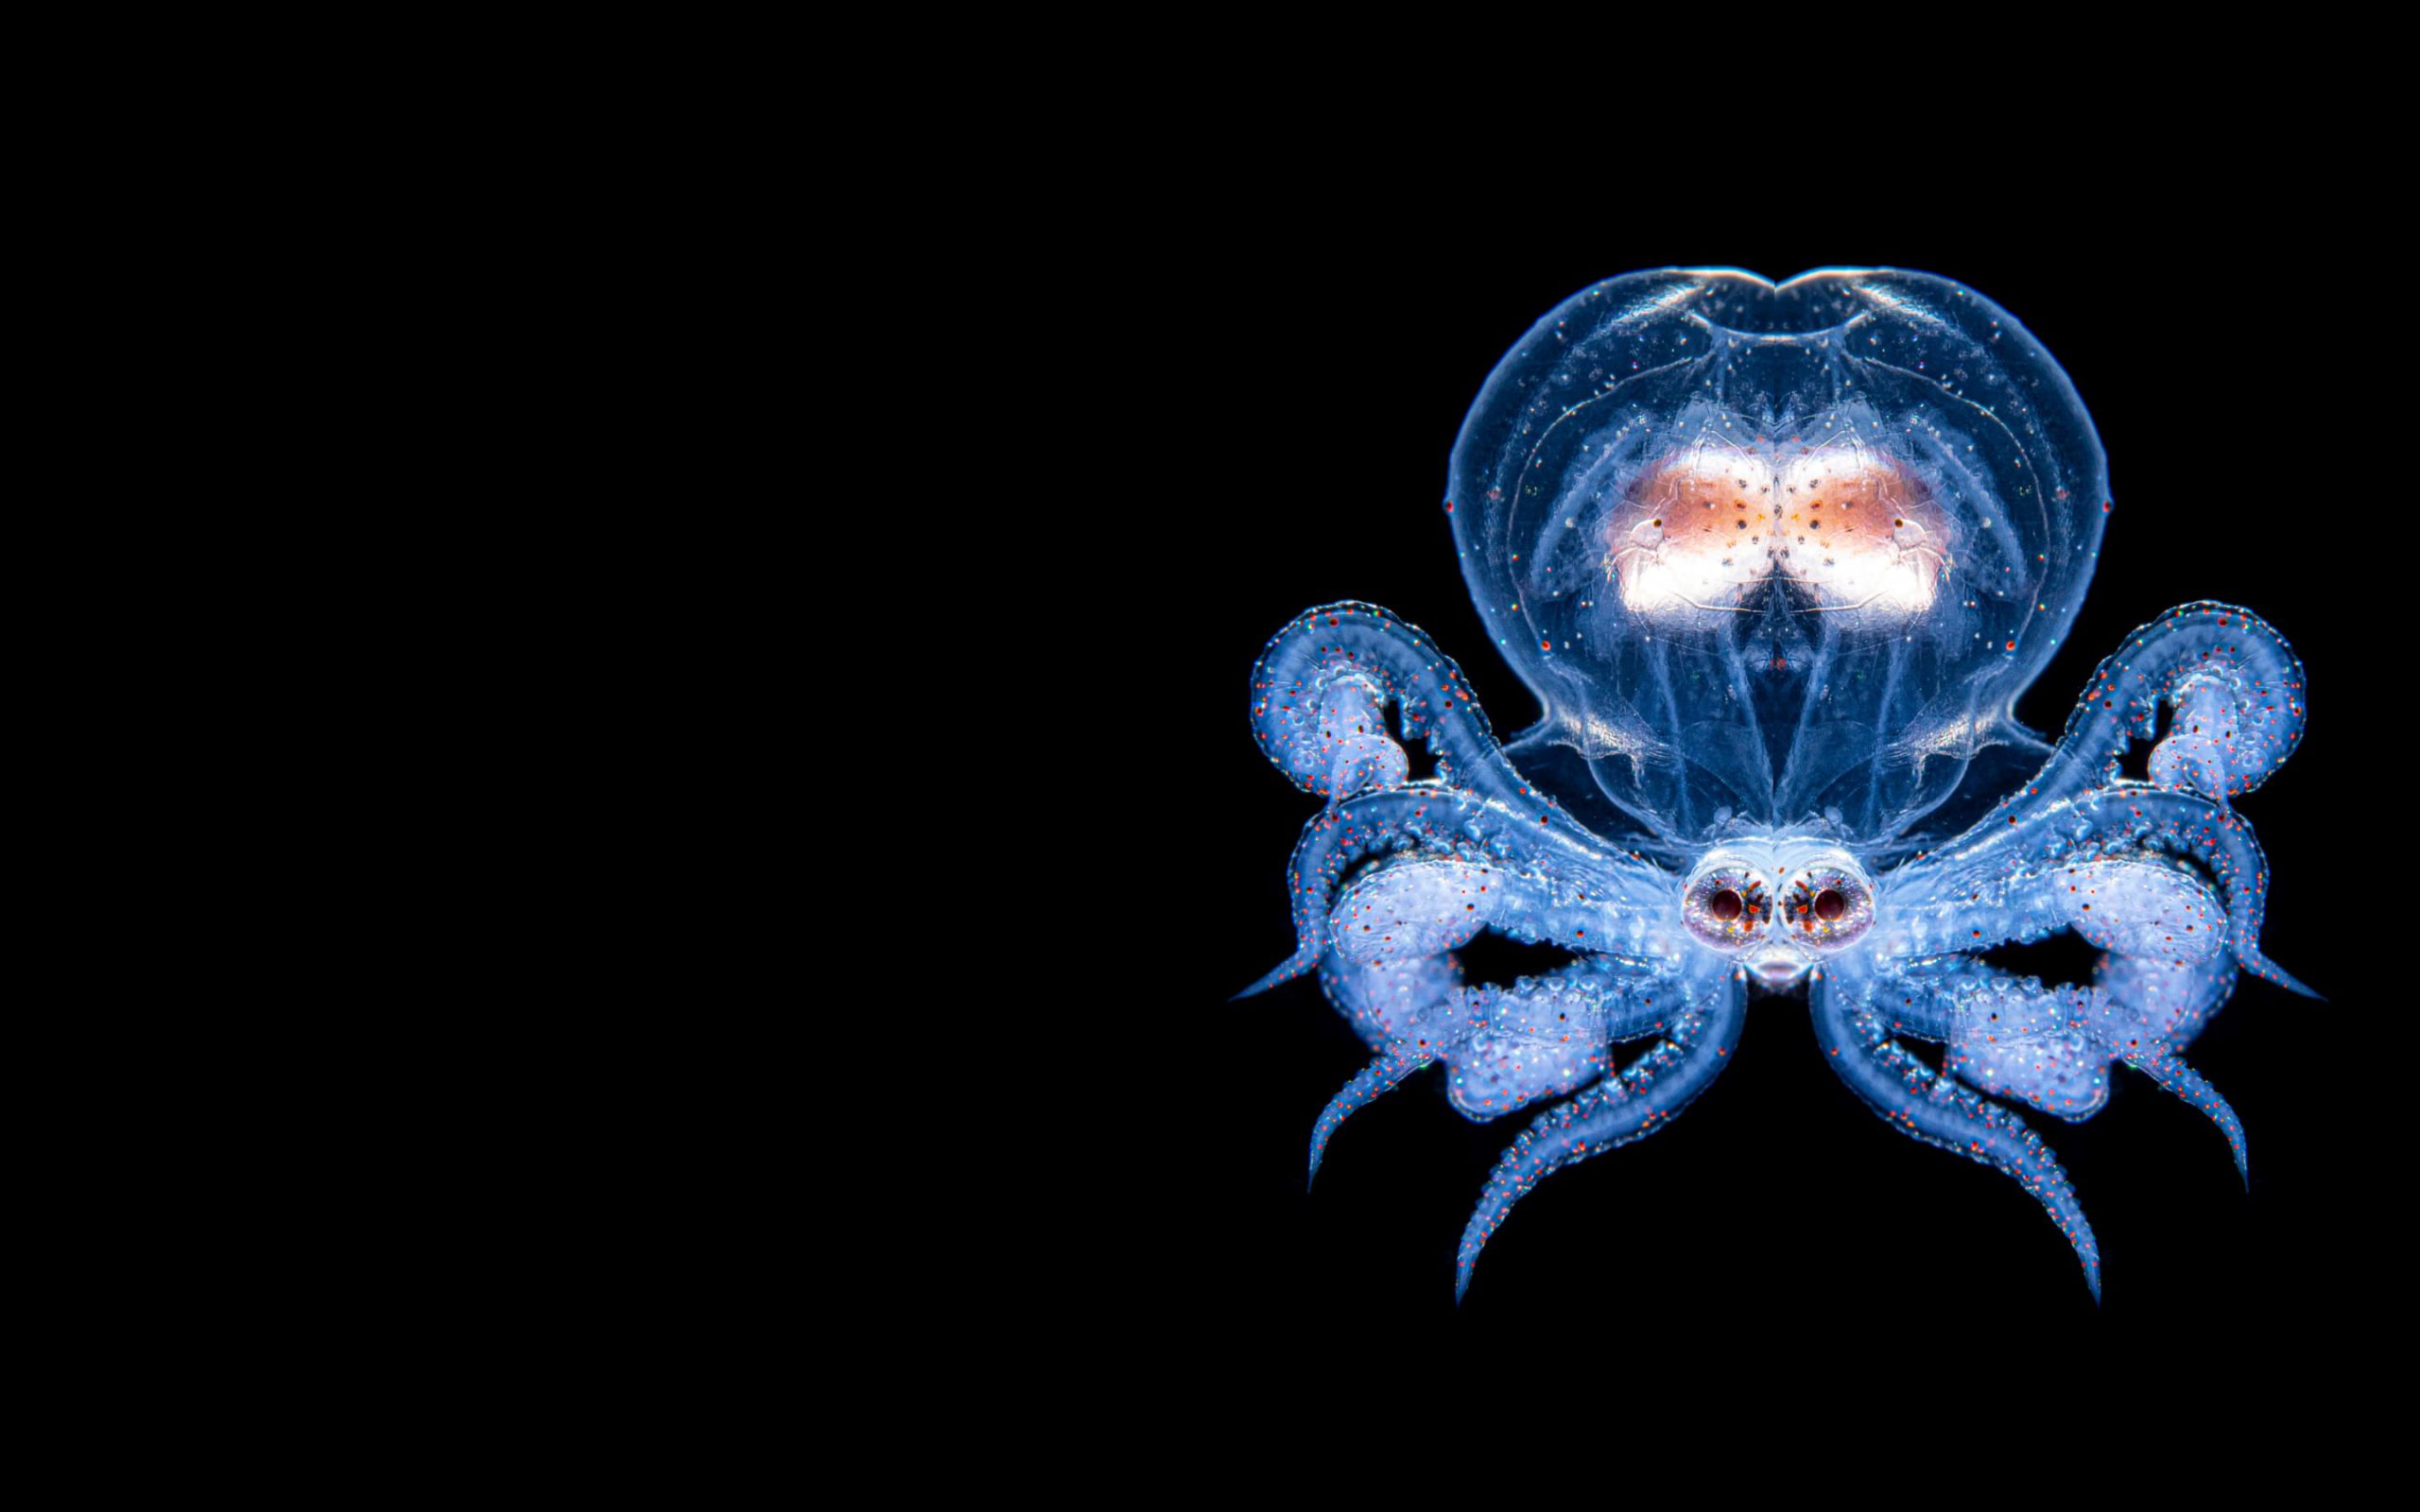 larval wonderpus octopus